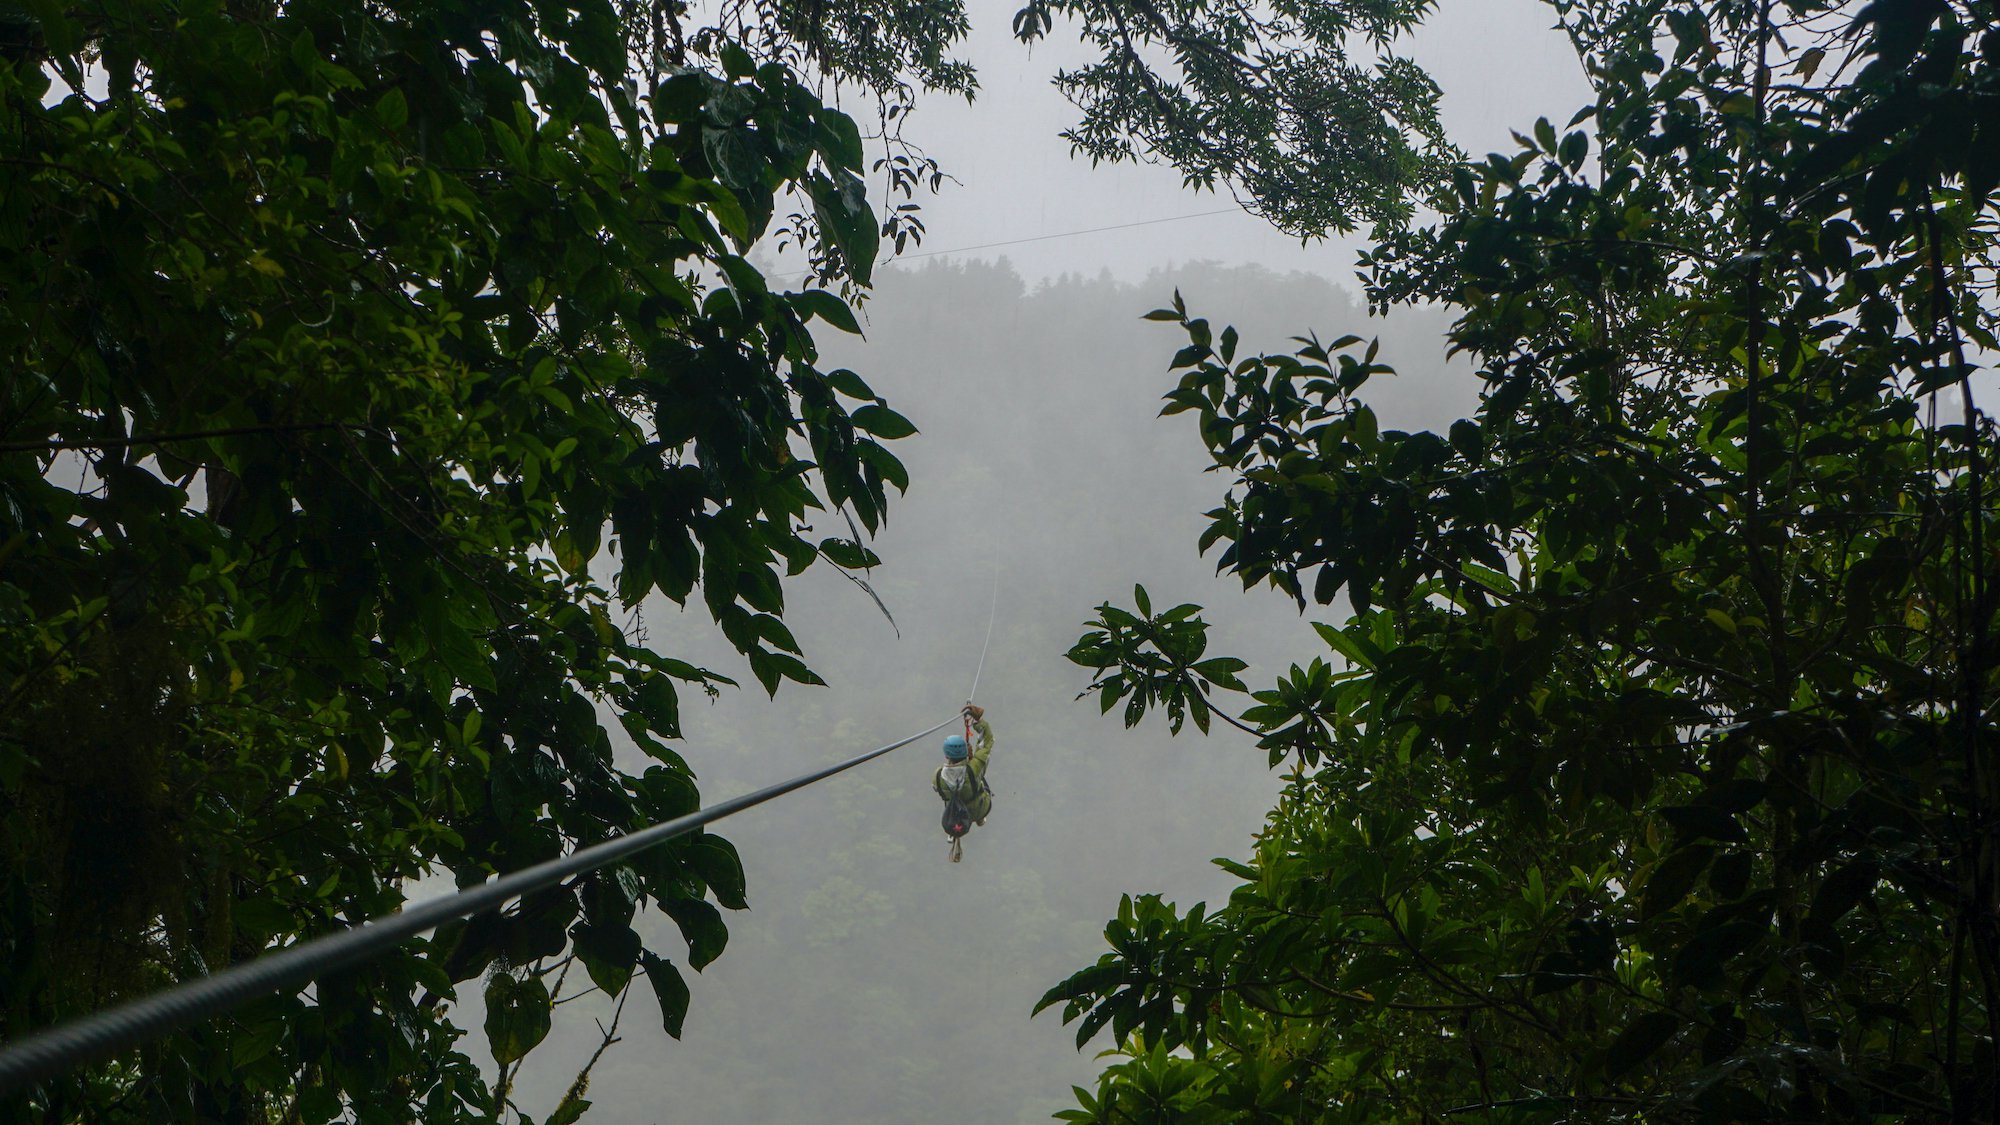 Extreme Activities In Costa Rica - Ziplining